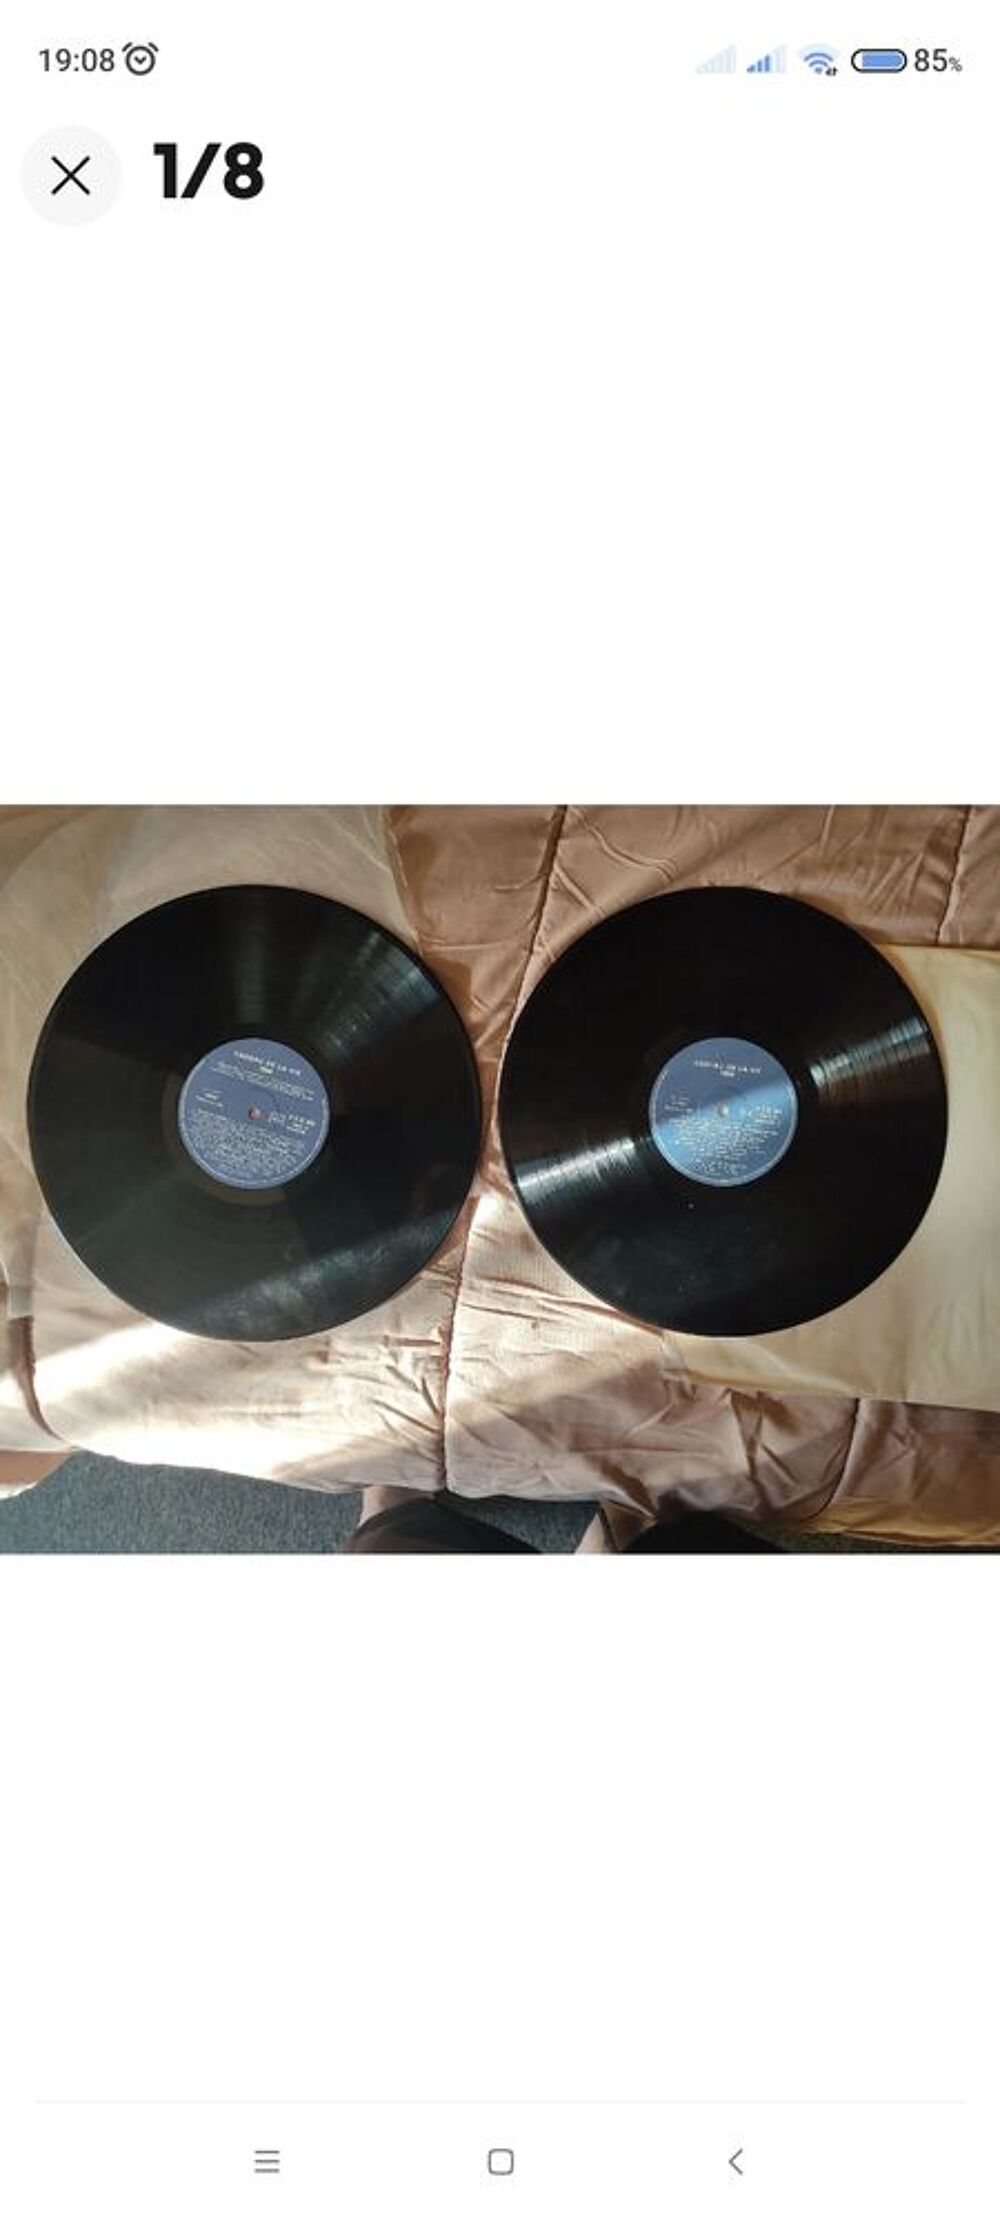 Vinyl ' CADEAU DE LA VIE '.
Compilation de 2 vinyl 33t CD et vinyles